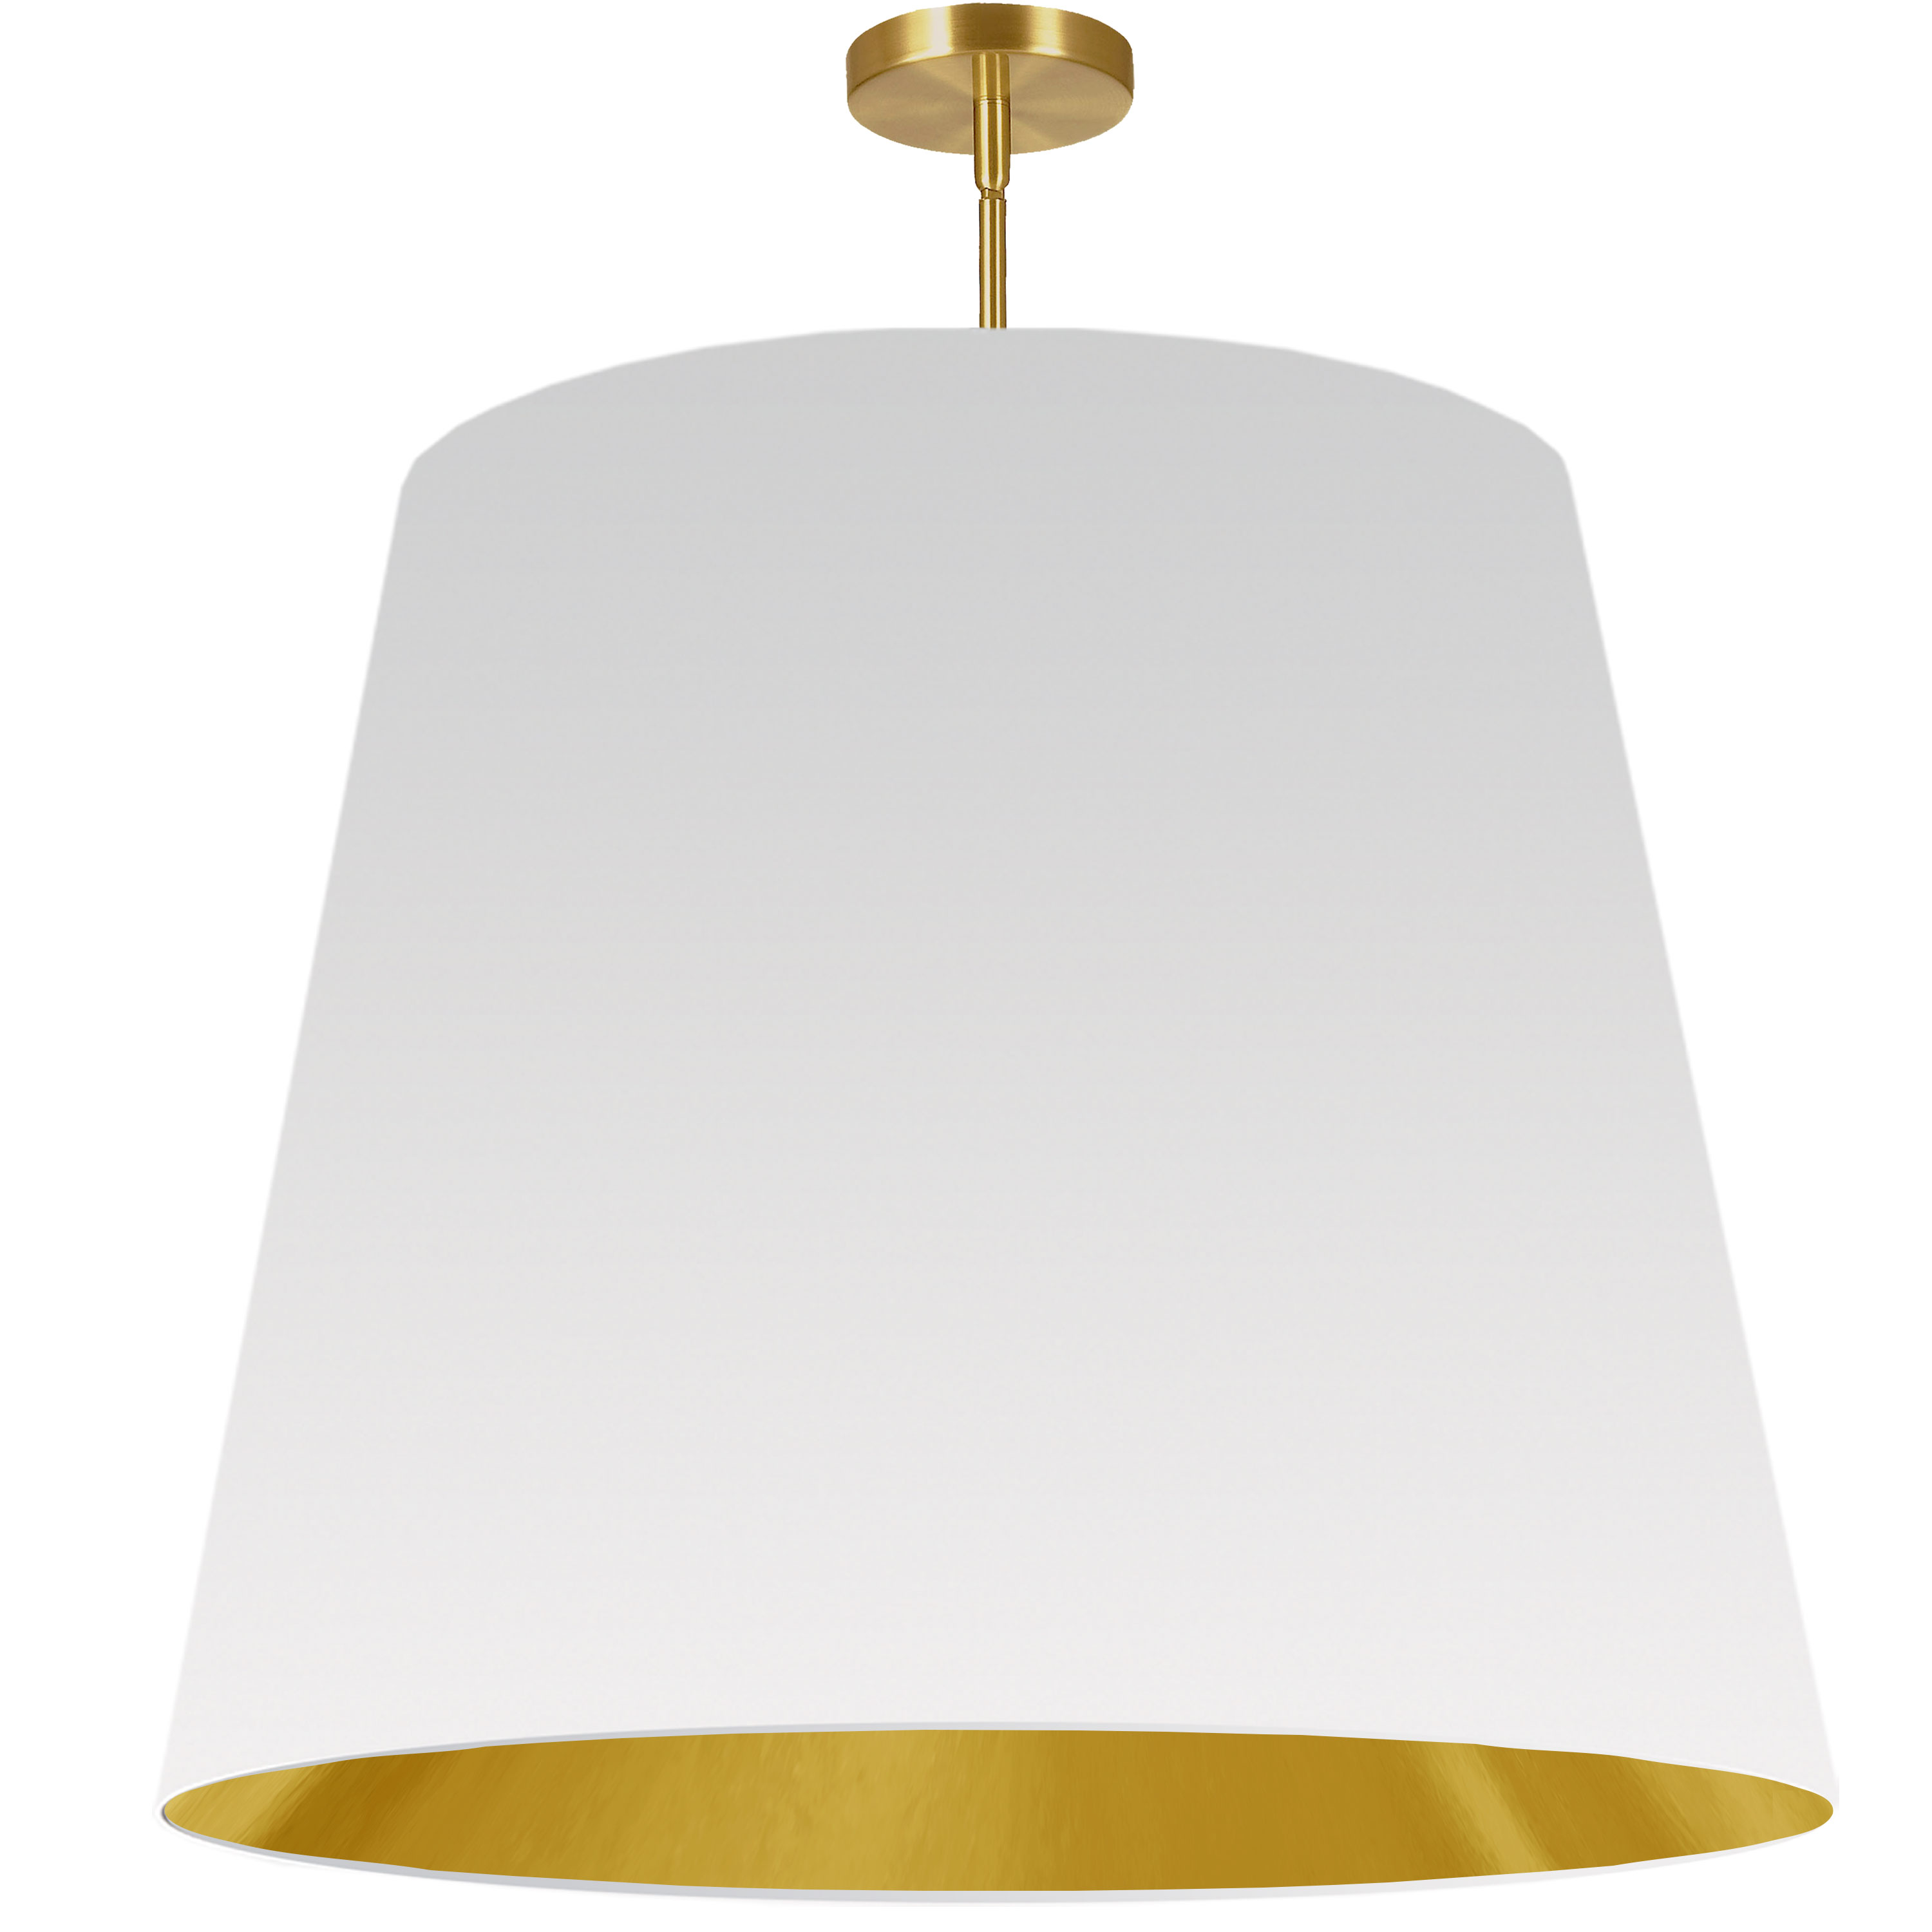 1 Light Oversized Drum Pendant X-Large White/Gold Shade